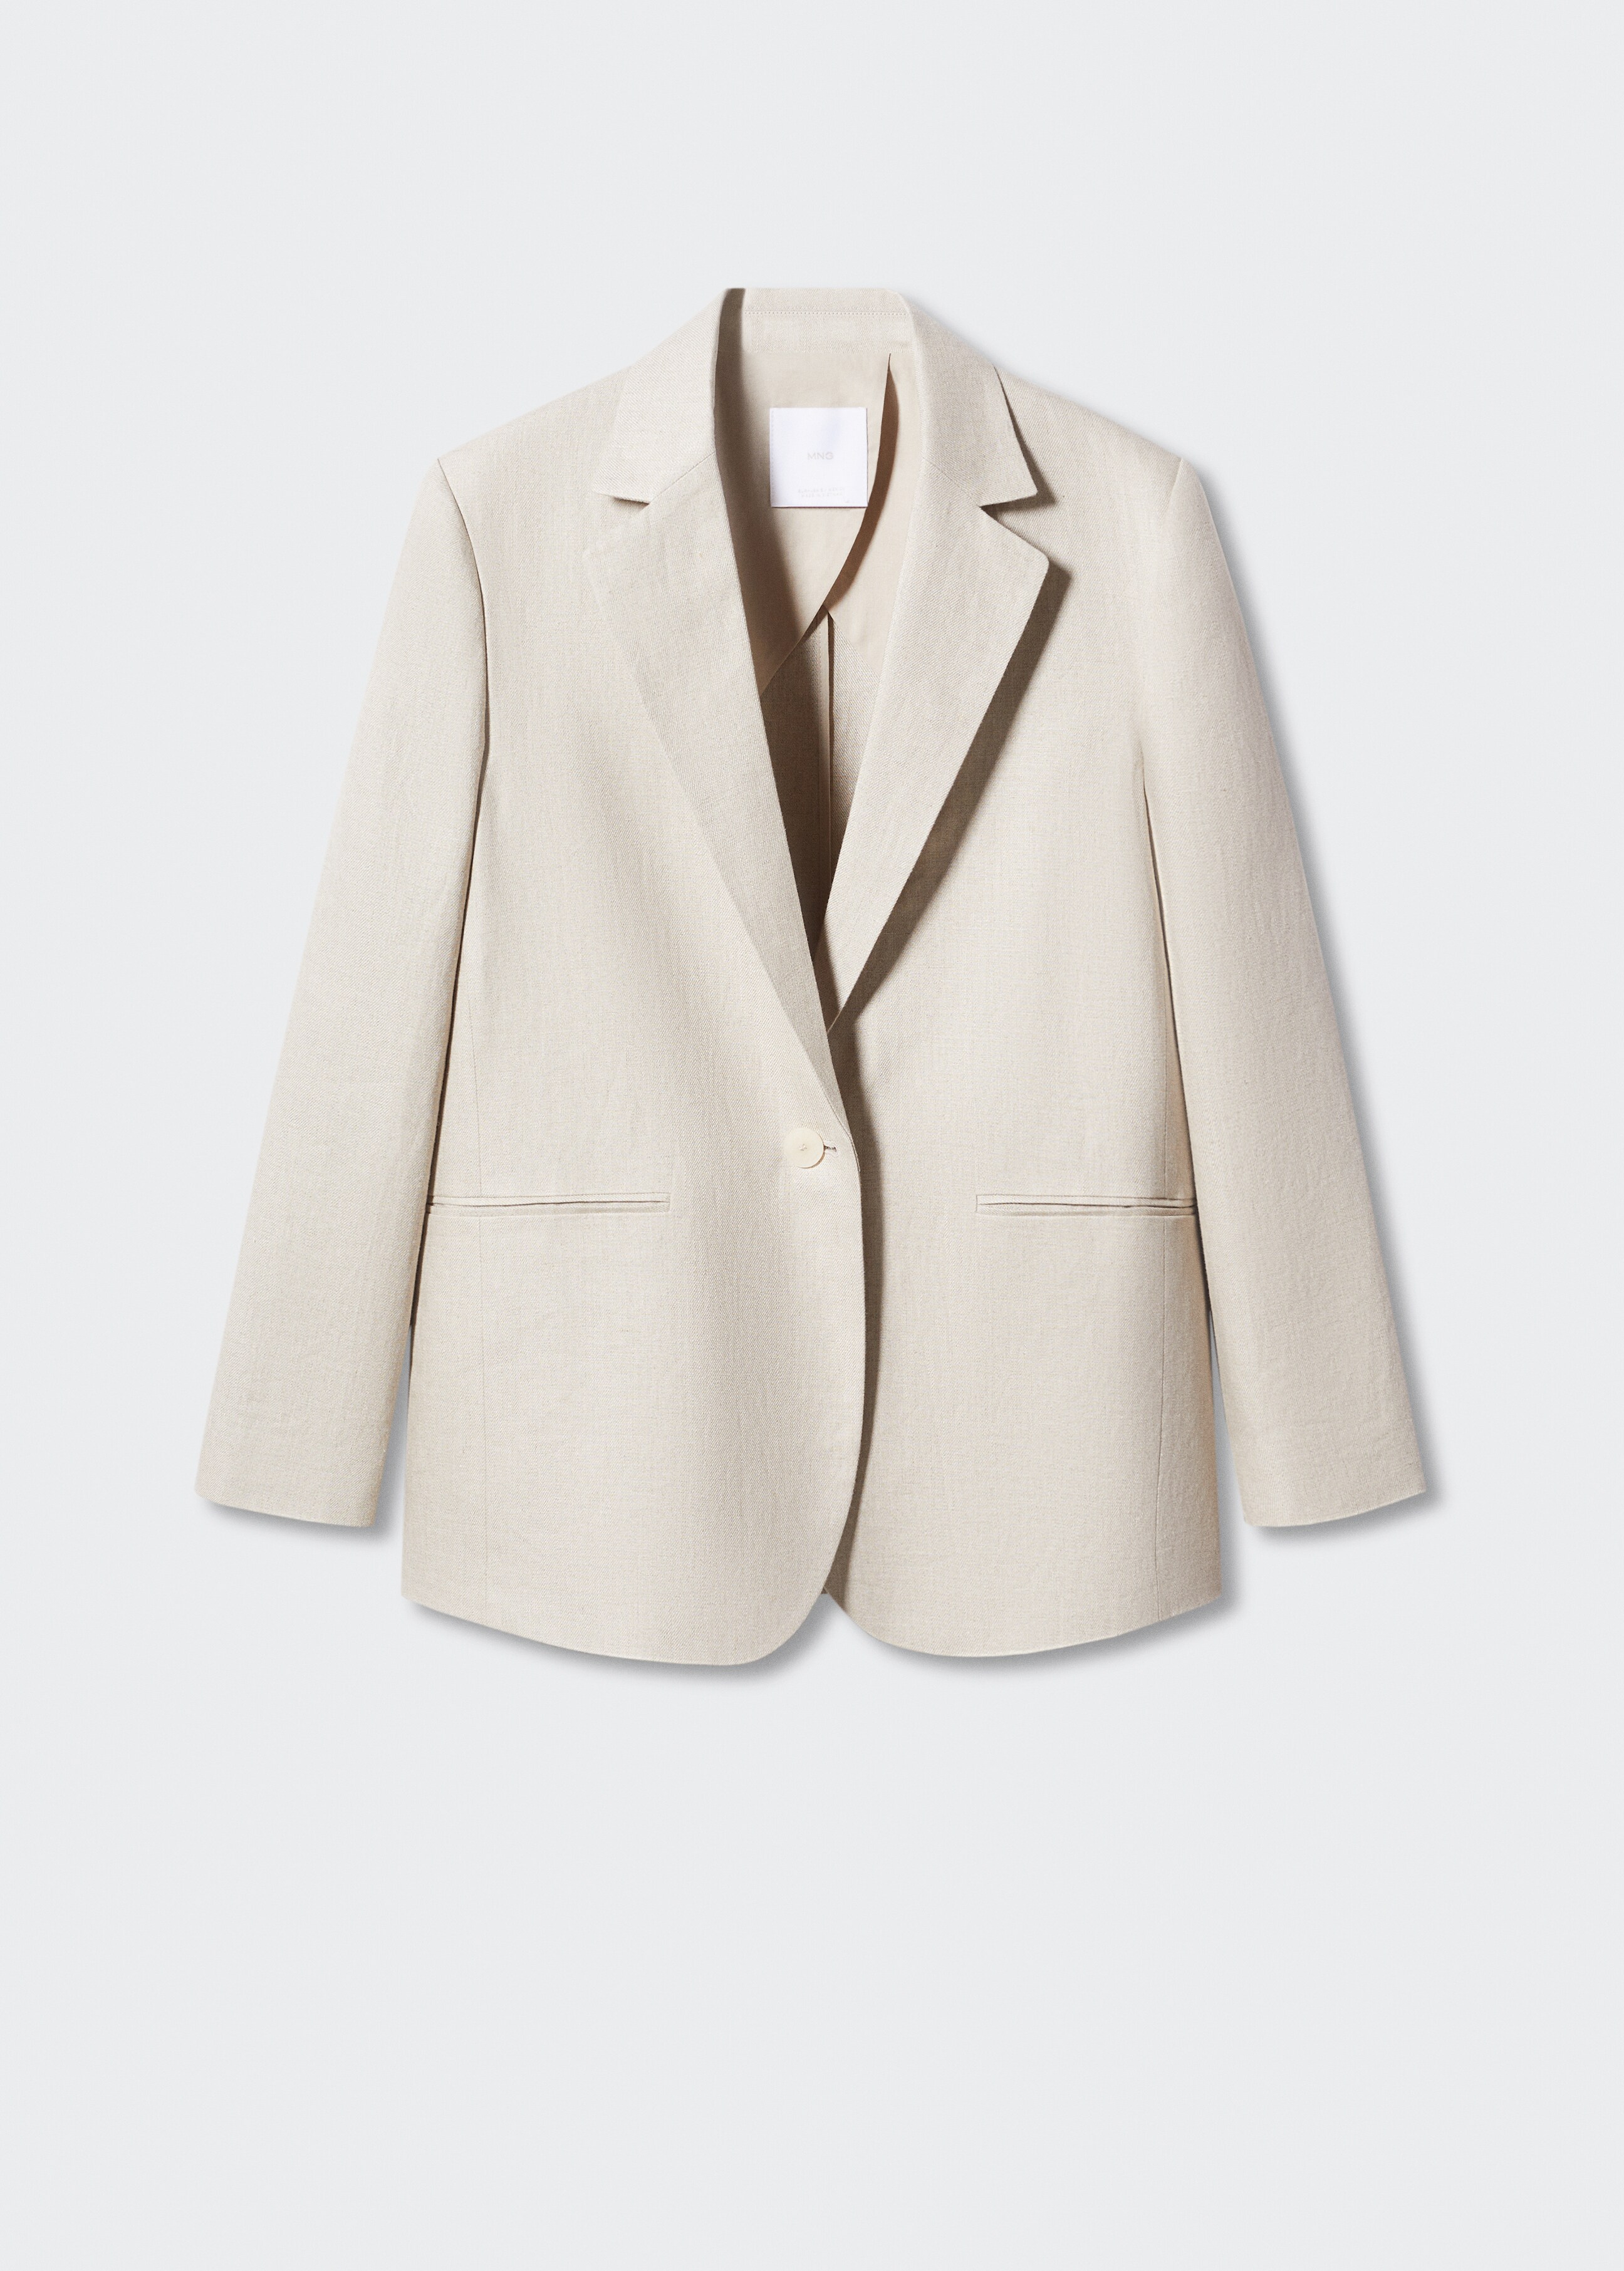 Linen blazer suit - Article without model